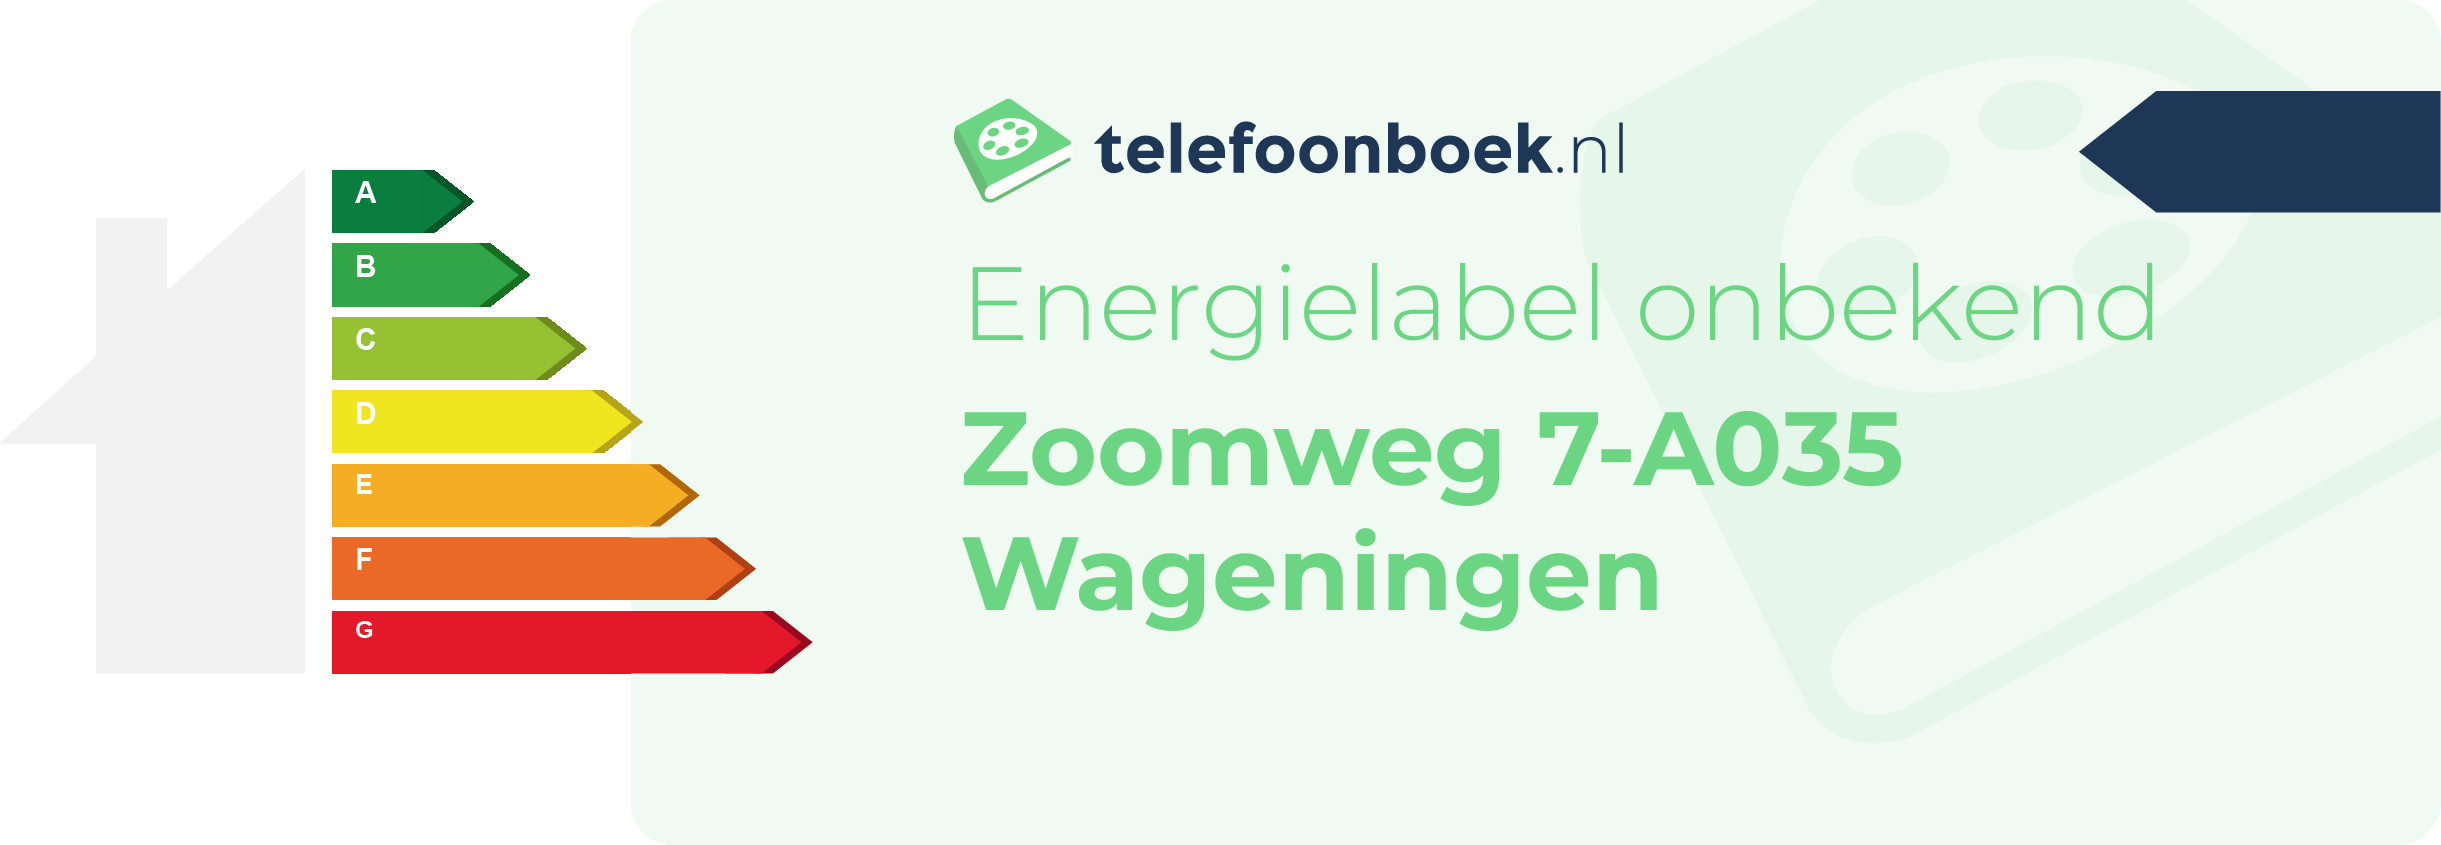 Energielabel Zoomweg 7-A035 Wageningen